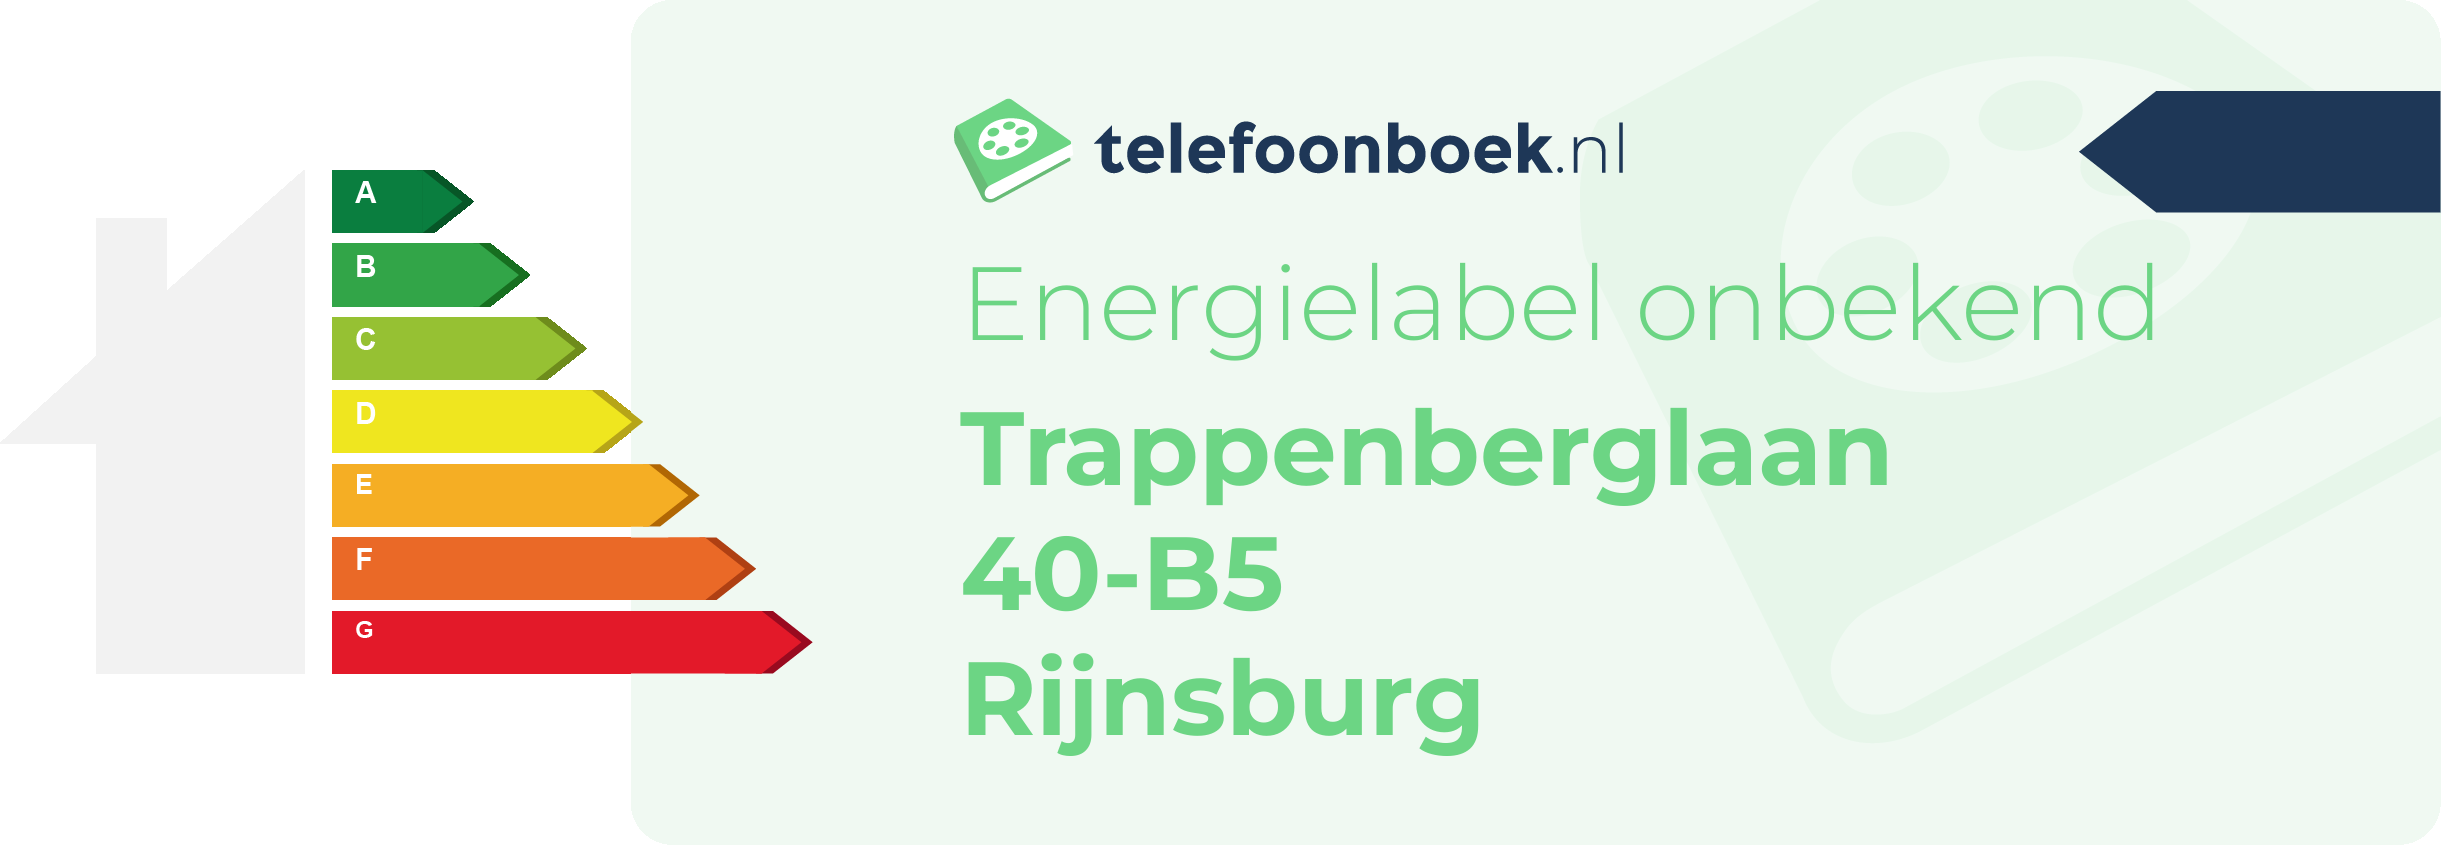 Energielabel Trappenberglaan 40-B5 Rijnsburg